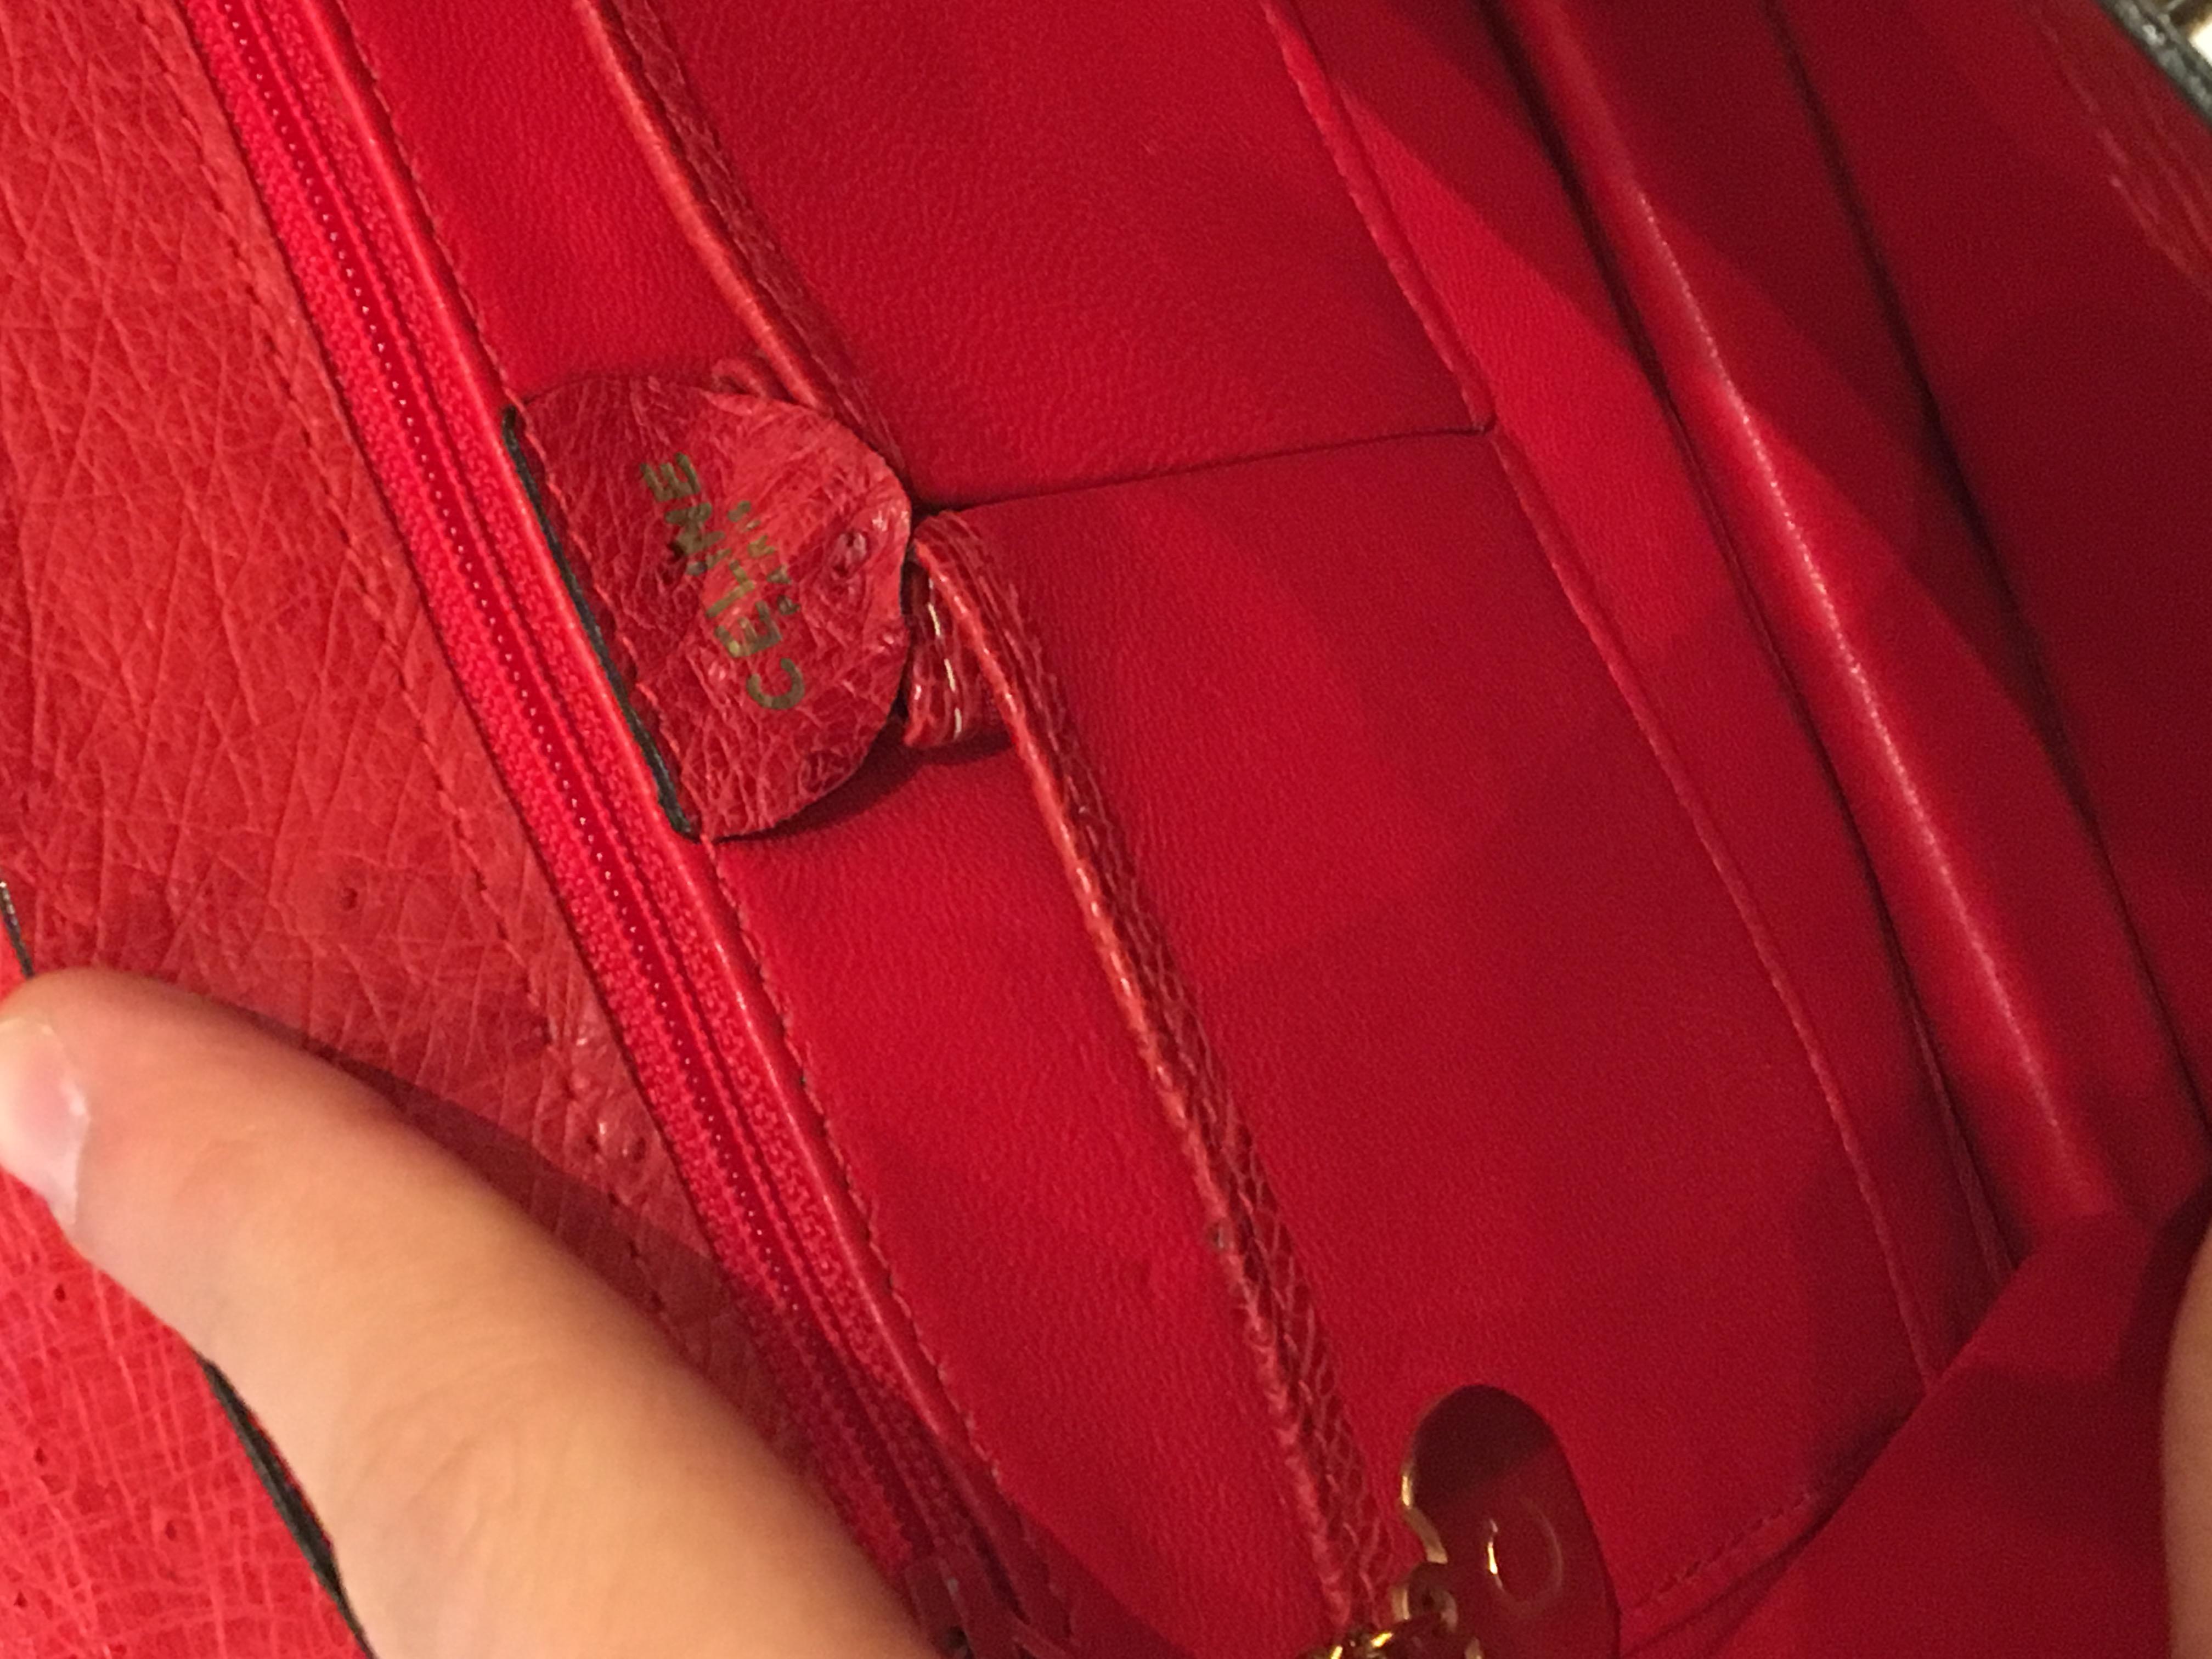 Vintage Celine Red Ostrich bag with golden hardware. 2